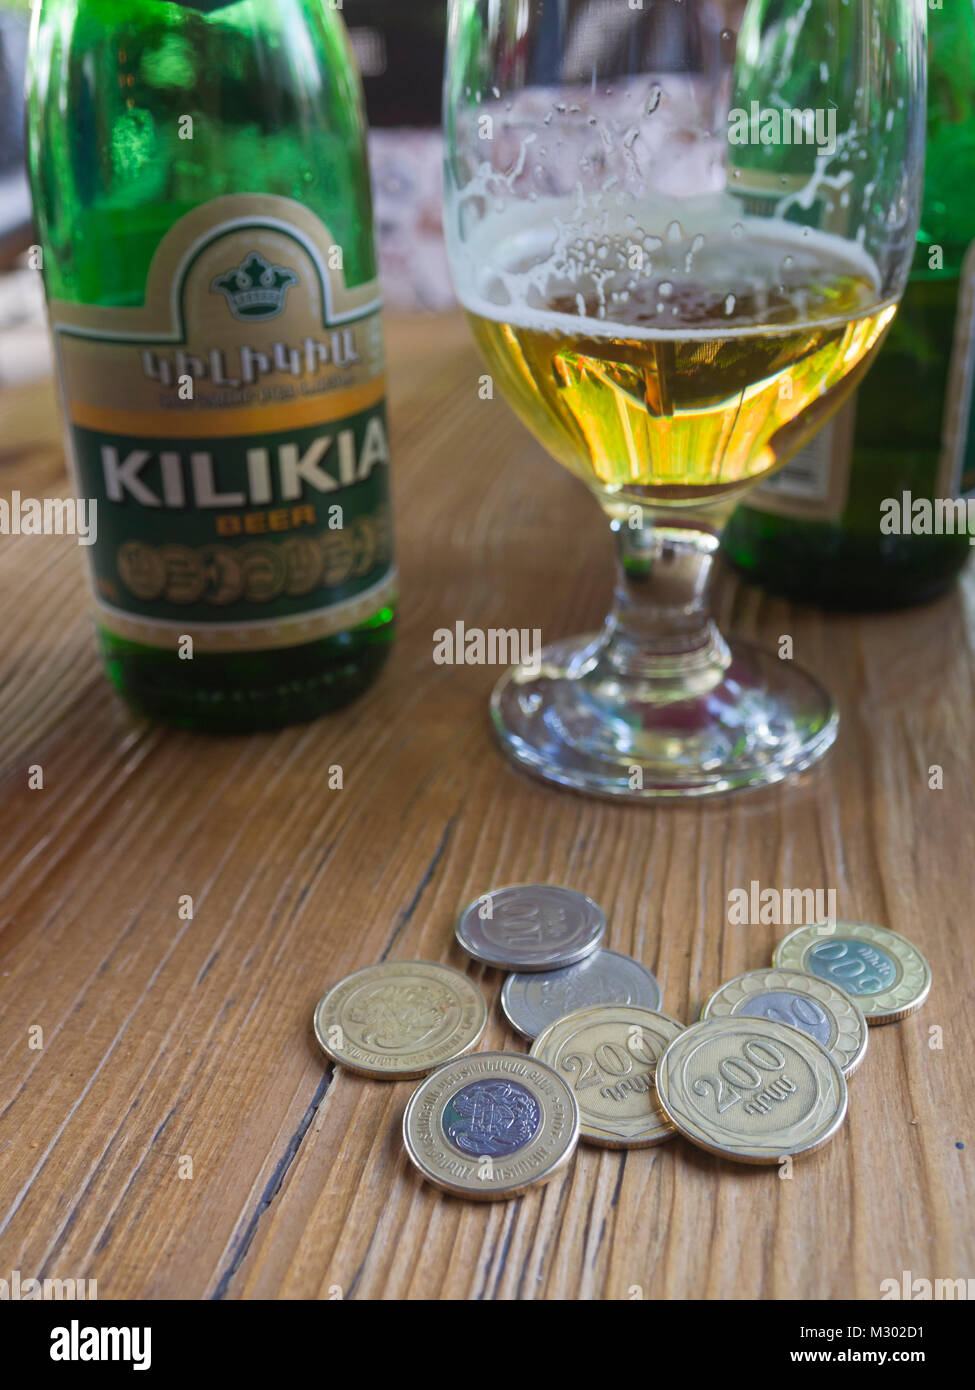 Bière Kilikia arménienne dans une bouteille et un verre, monnaies locales, dram, sur la table dans un restaurant à Erevan, Arménie Banque D'Images